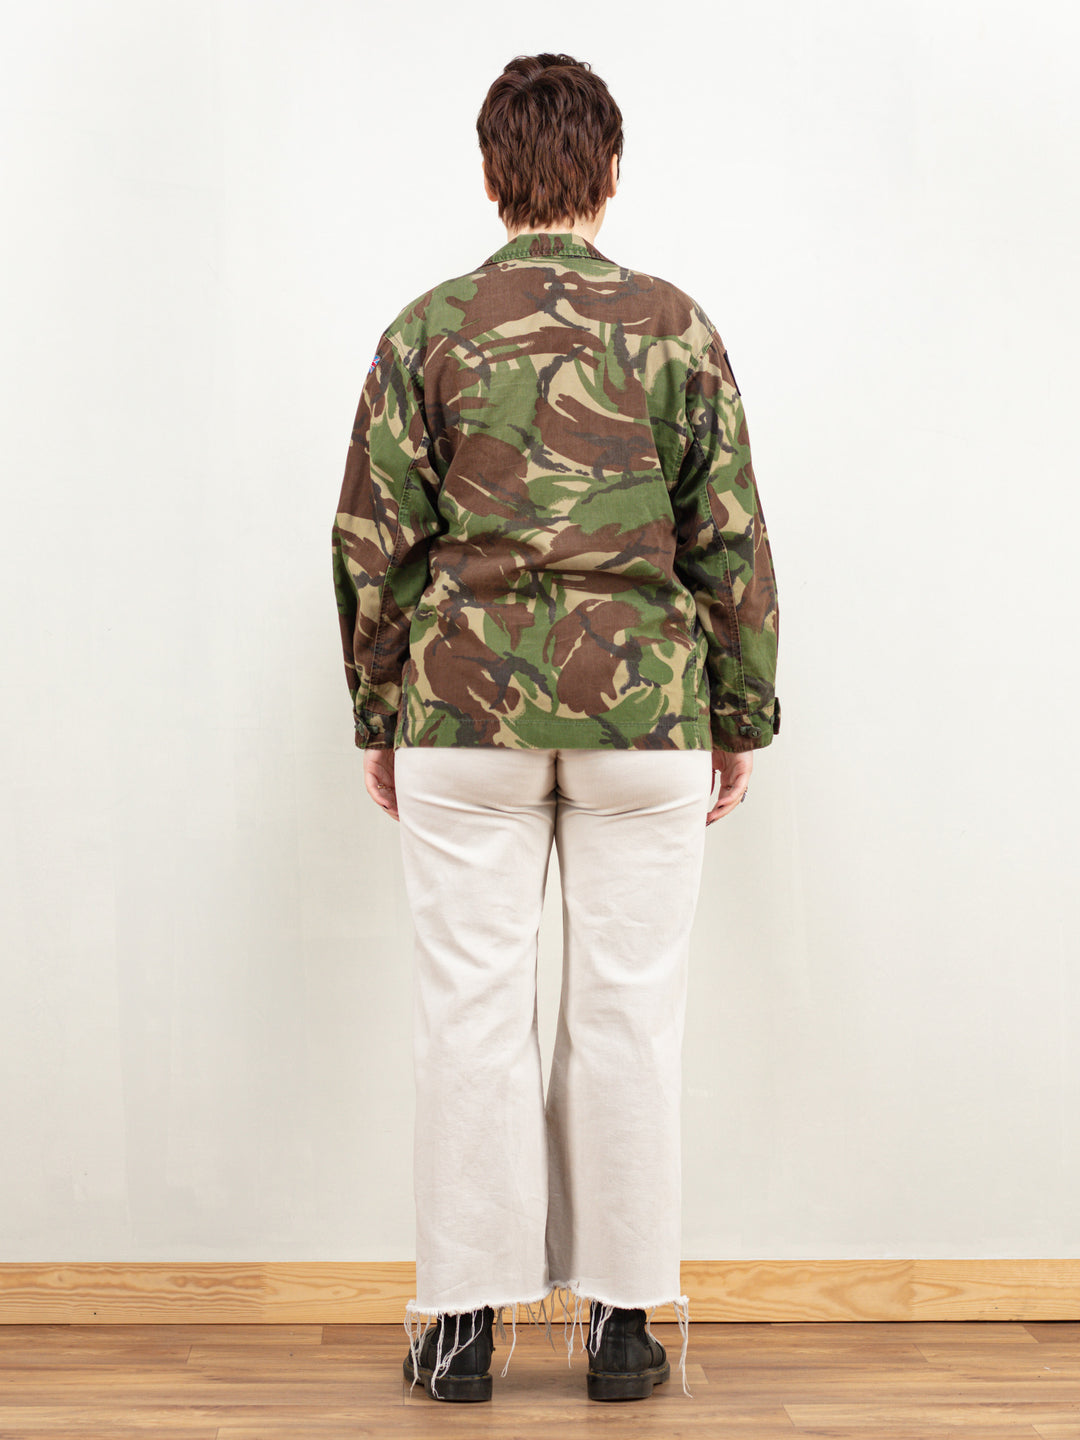 Vintage Military Jacket 90s camouflage jacket camo army outerwear unisex khaki jacket 80s field jacket vintage clothing size medium